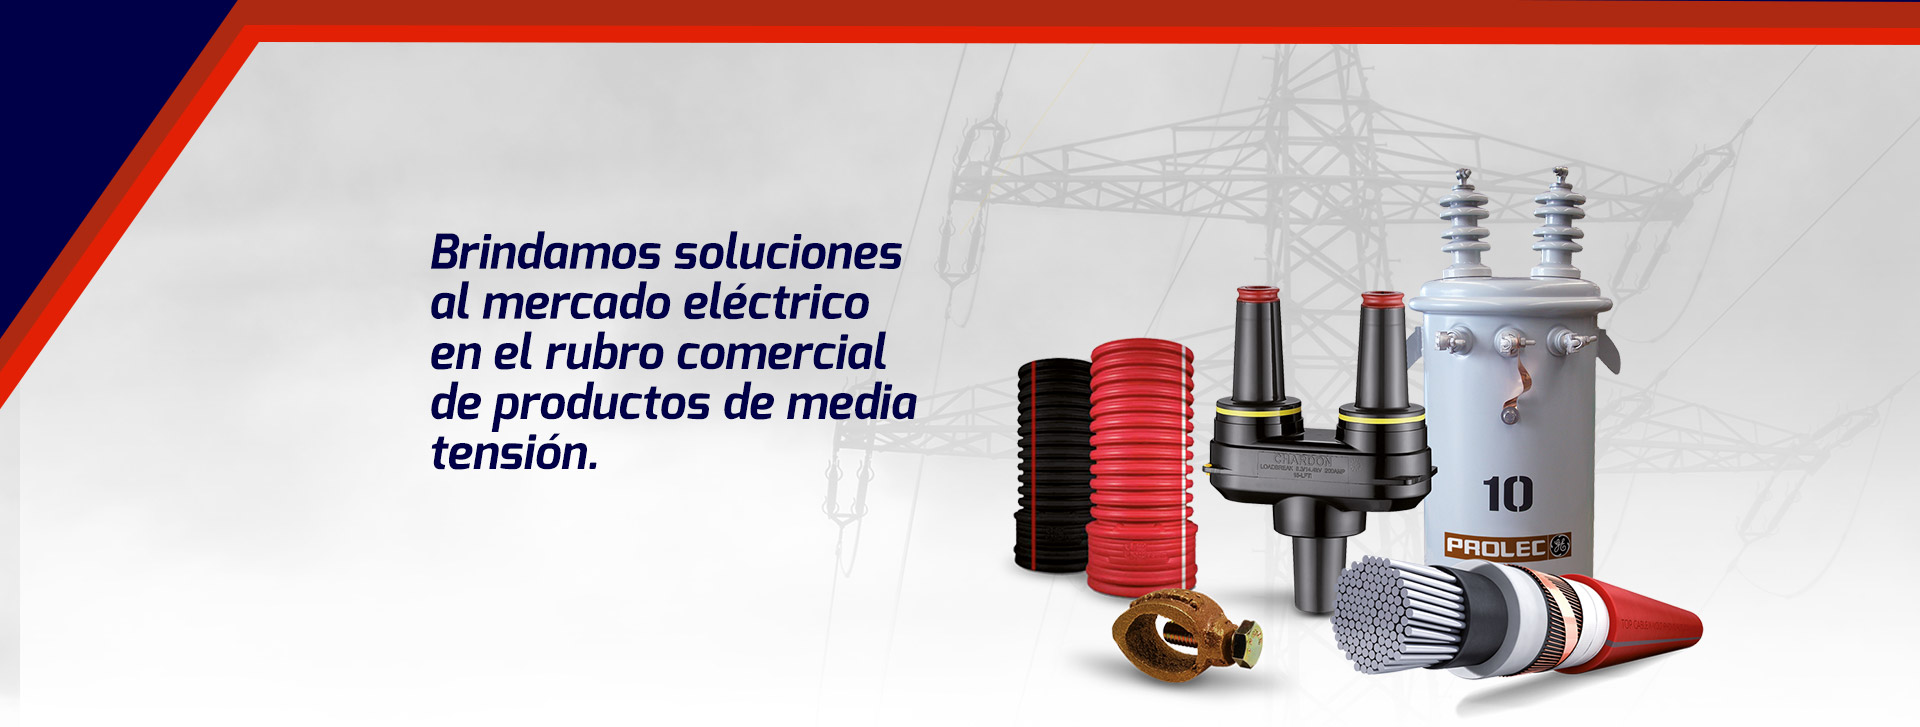 Brindamos soluciones al mercado eléctrico en el rubro comercial de productos de media tensión